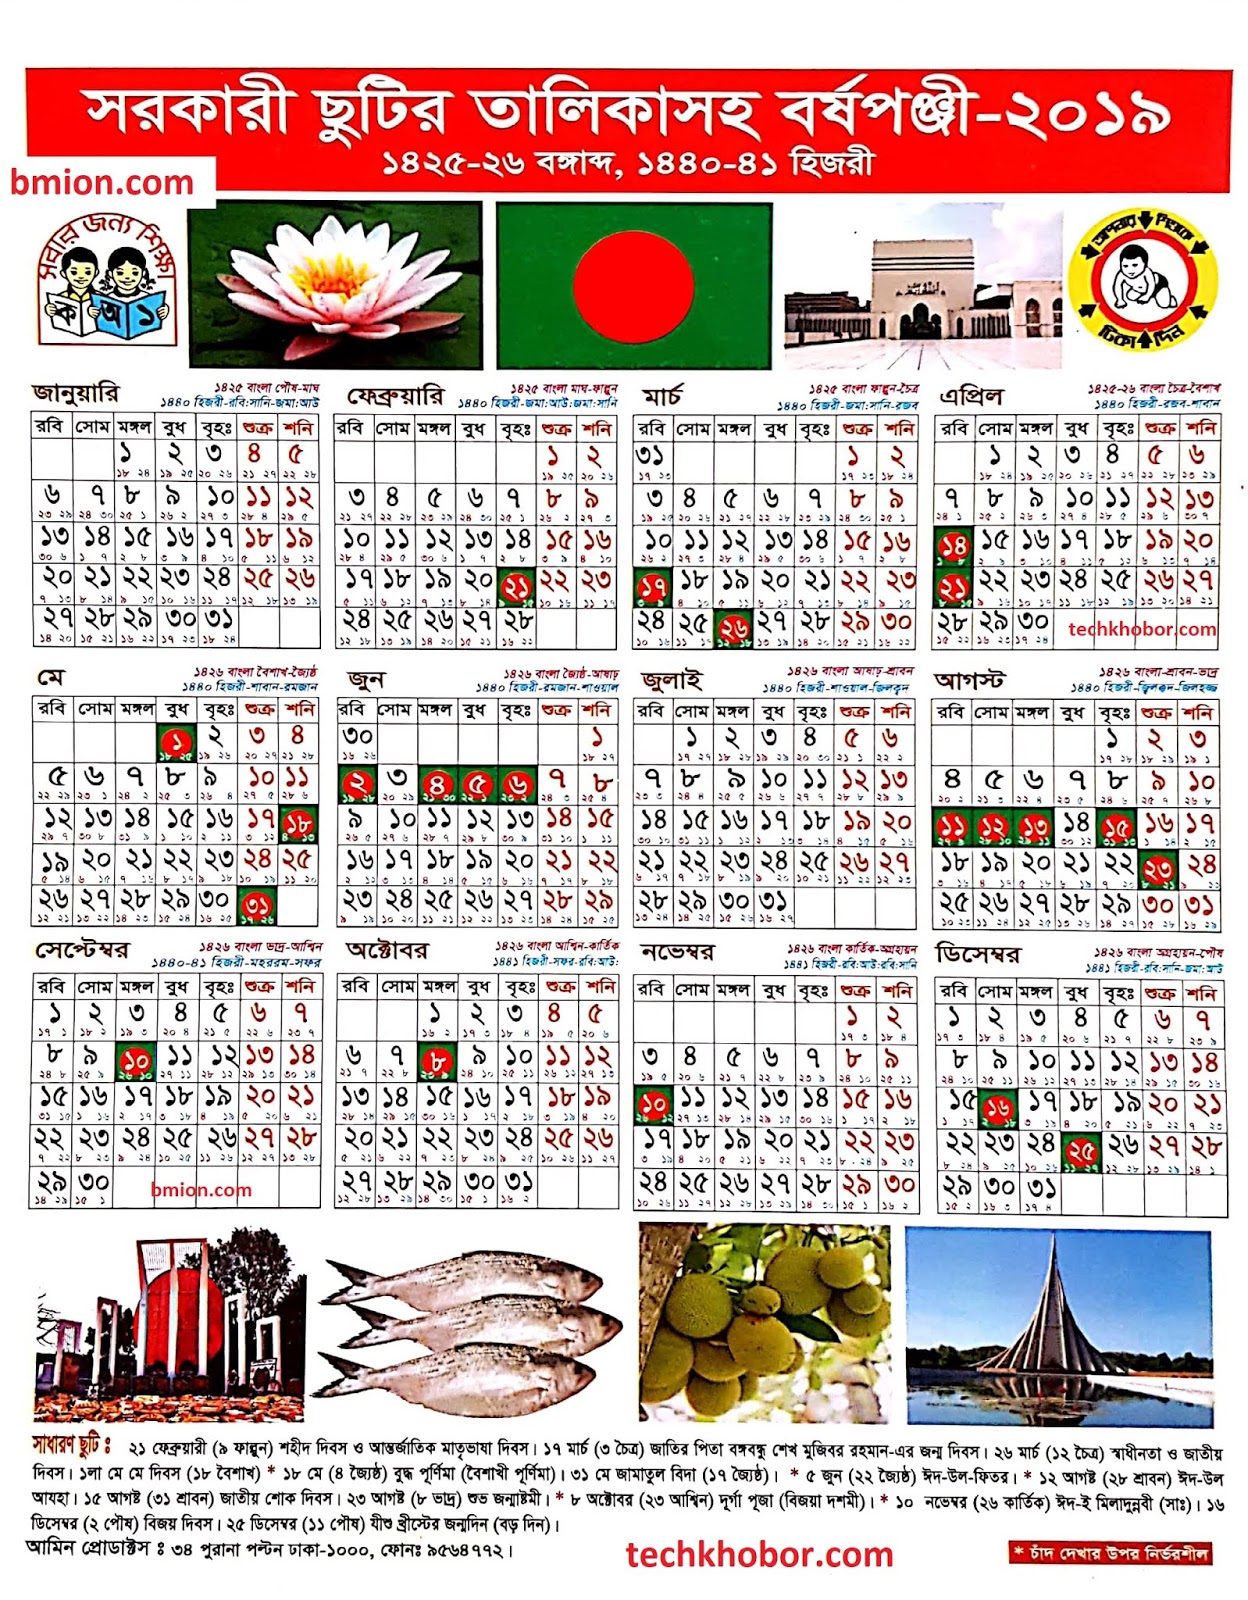 BANGLADESH GOVERNMENT CALENDAR 2020 PDF Calendario 2019